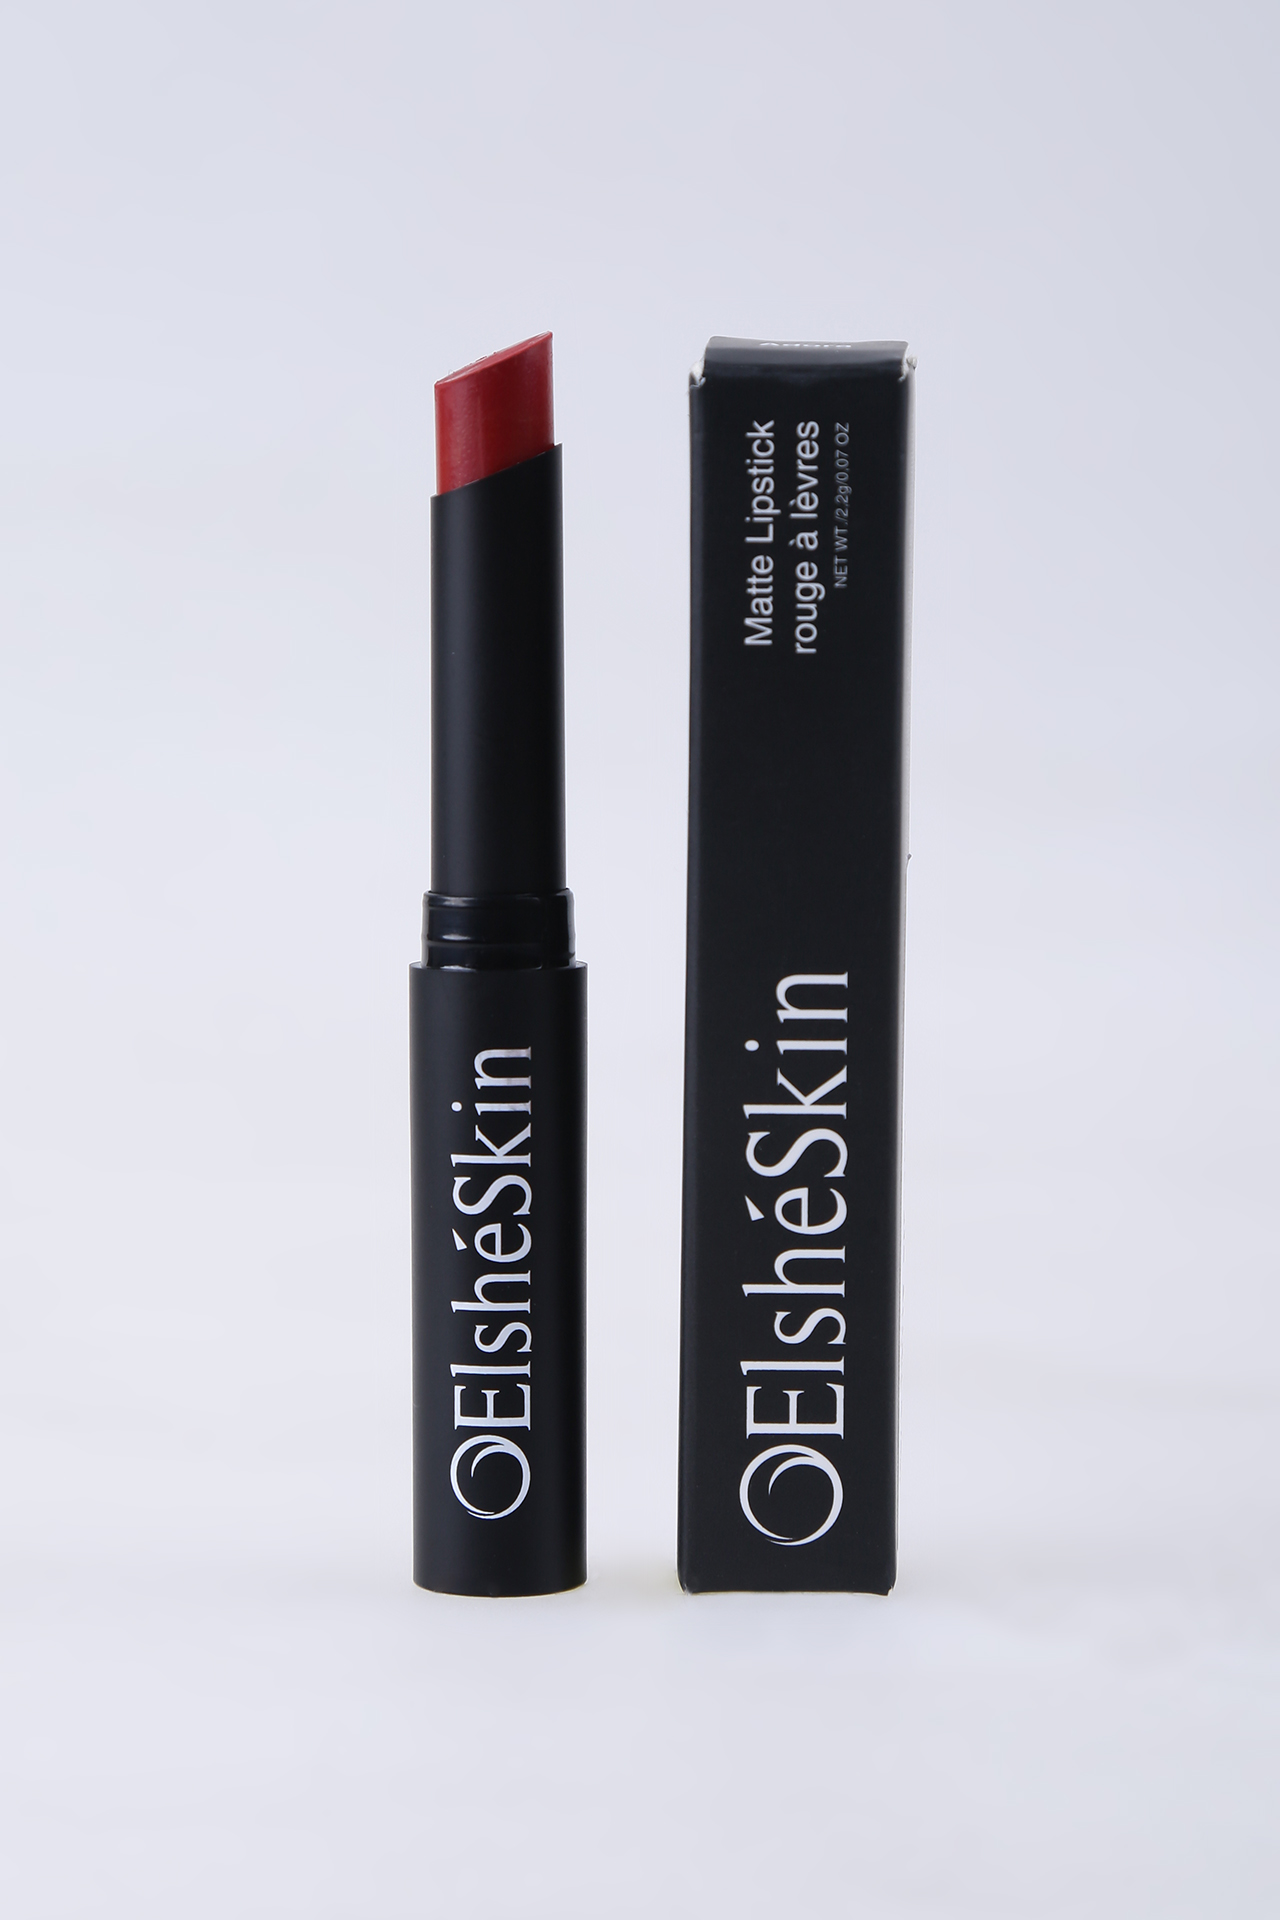 Warna Lipstik yang Cocok untuk Bibir Hitam - Warna Merah Tua (Dark Red)